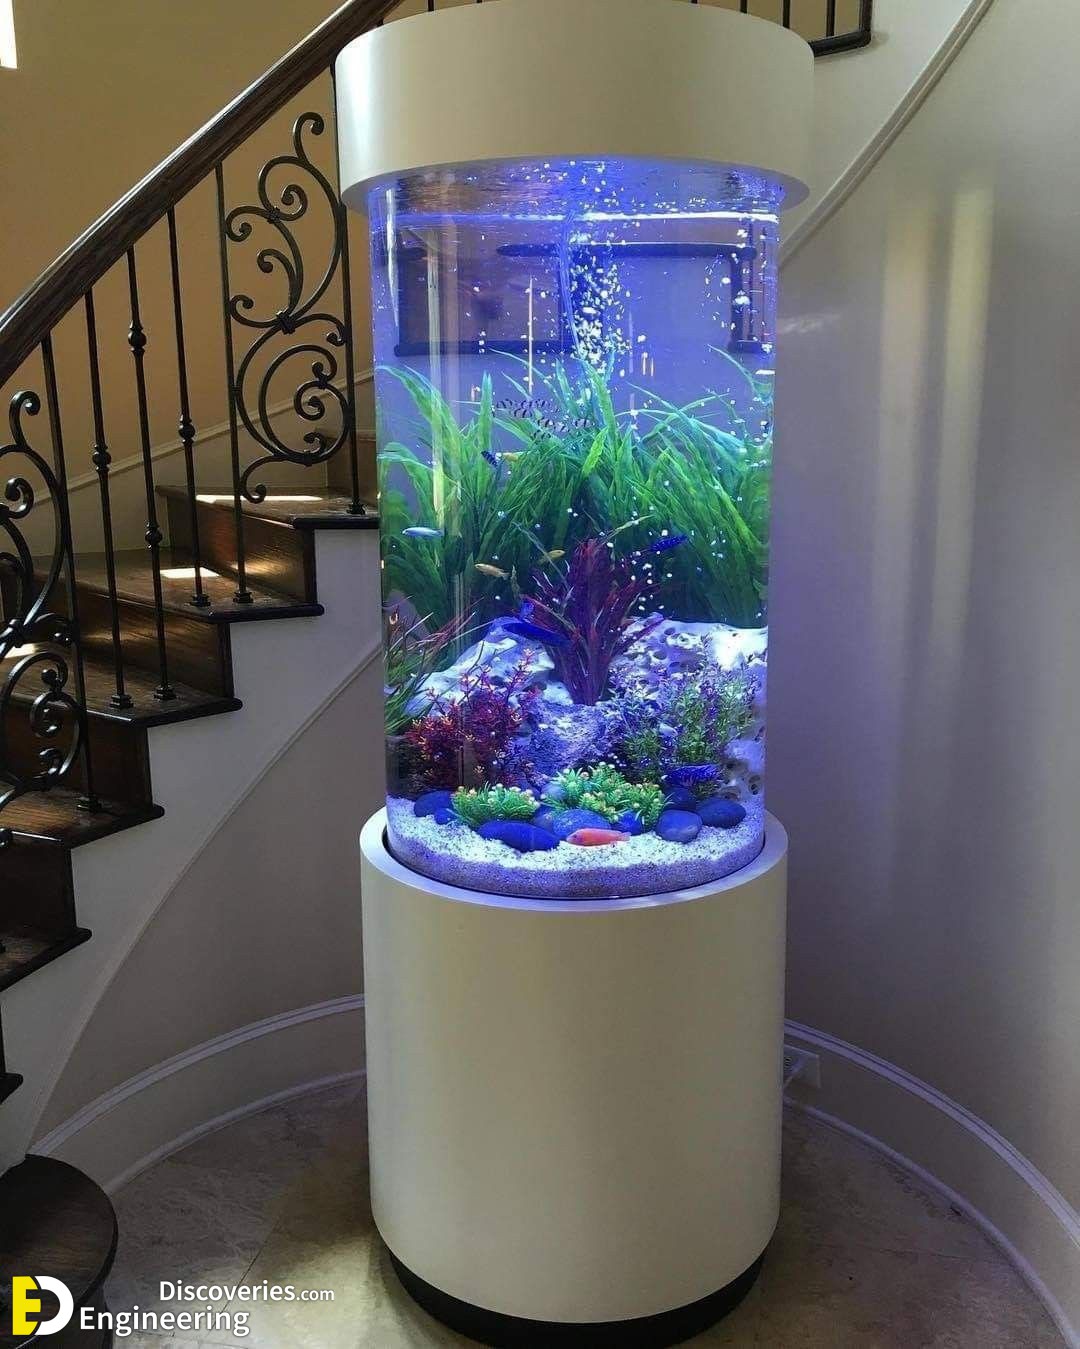 32+Unique Aquarium Designs to Freshen Up Your Home Interior